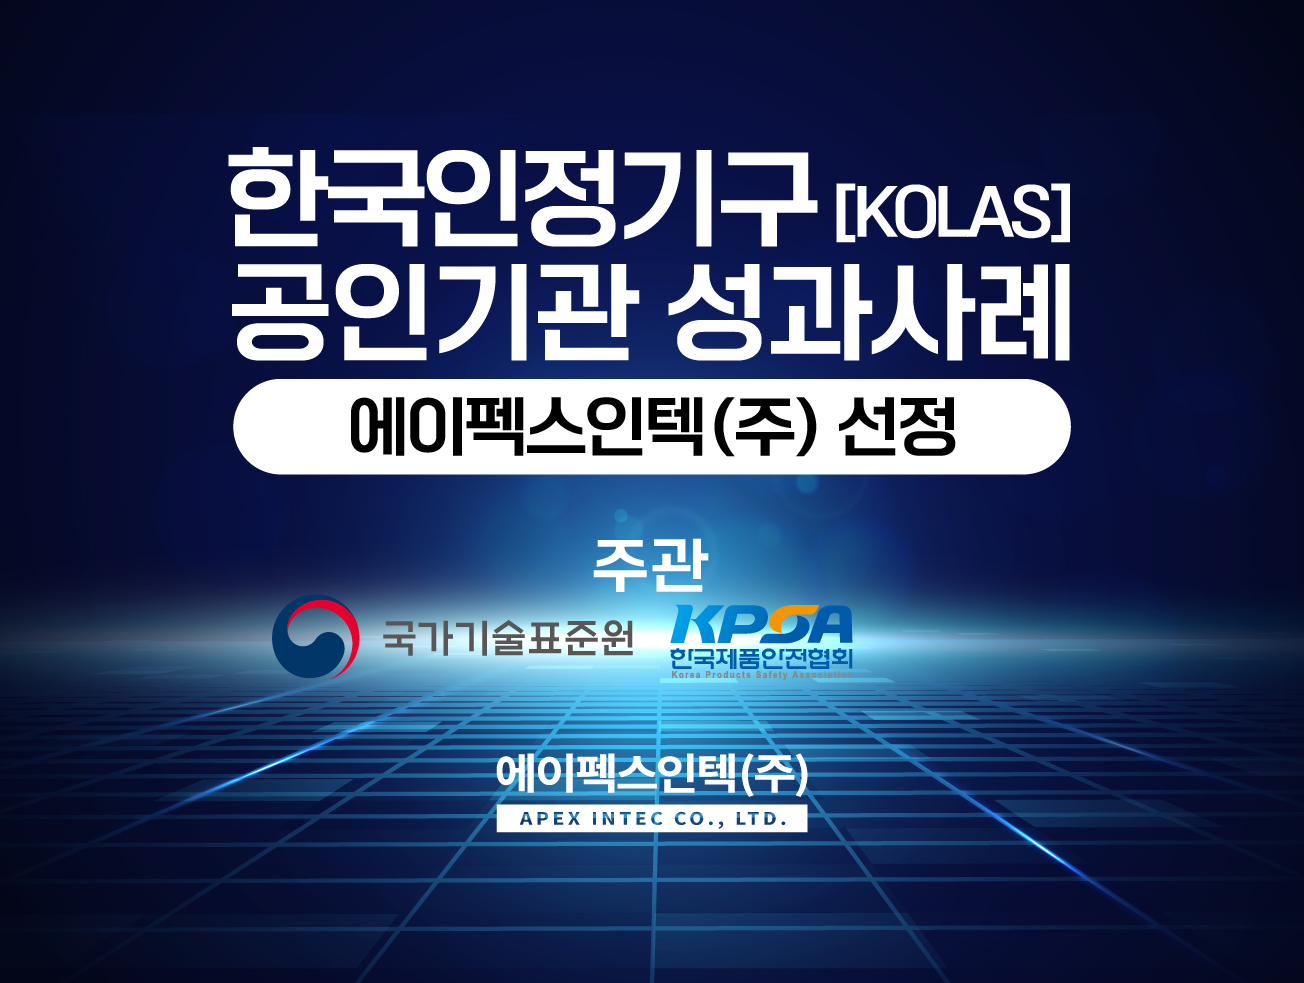 한국인정기구(KOLAS) 공인기관 성과사례 - 에이펙스인텍(주) 선정!